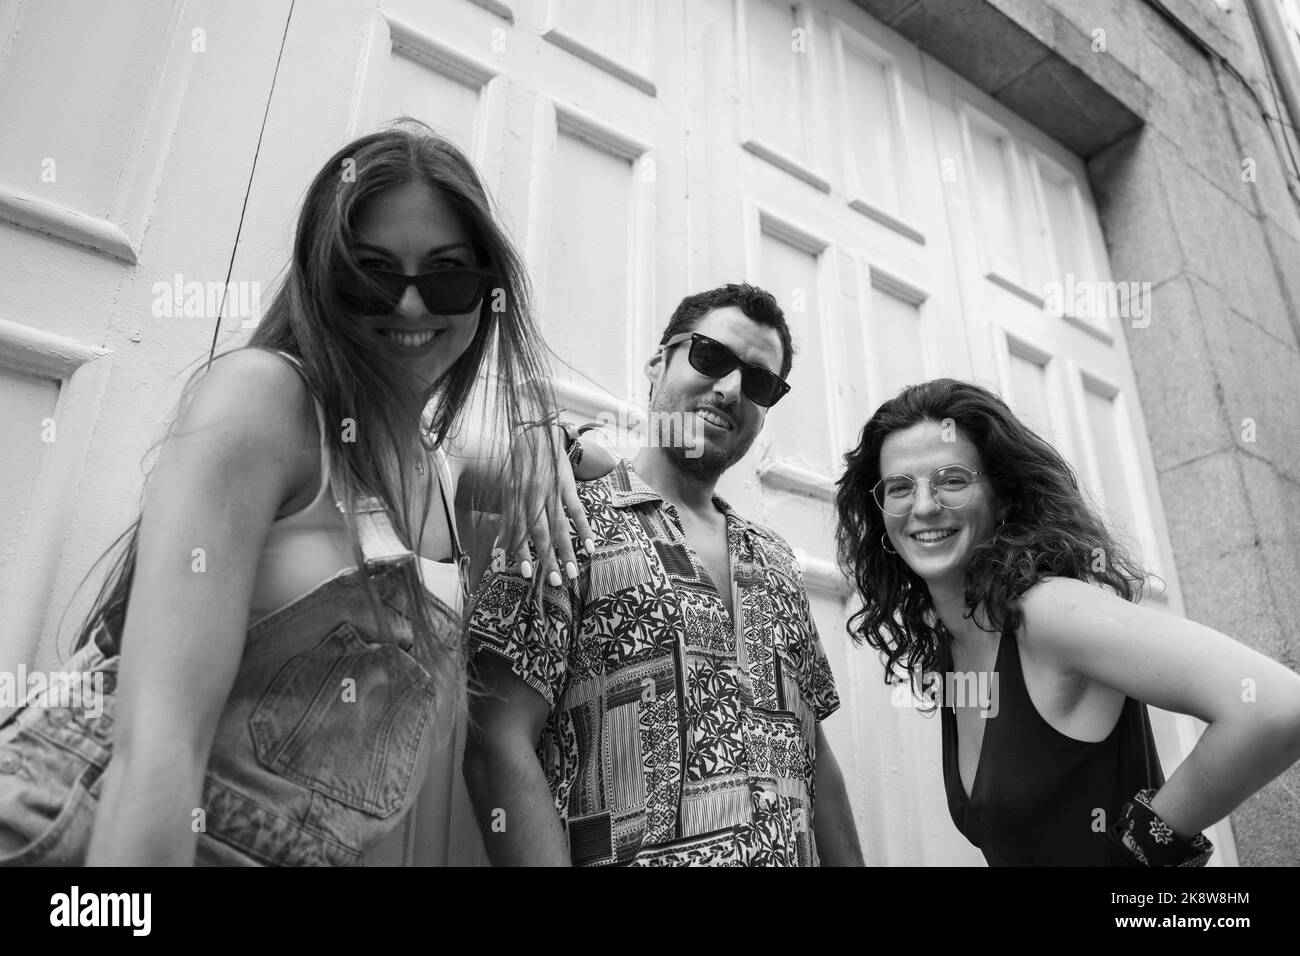 Eine Gruppe von drei Freunden, die Spaß haben und auf einer Bank auf der Straße lachen Stockfoto